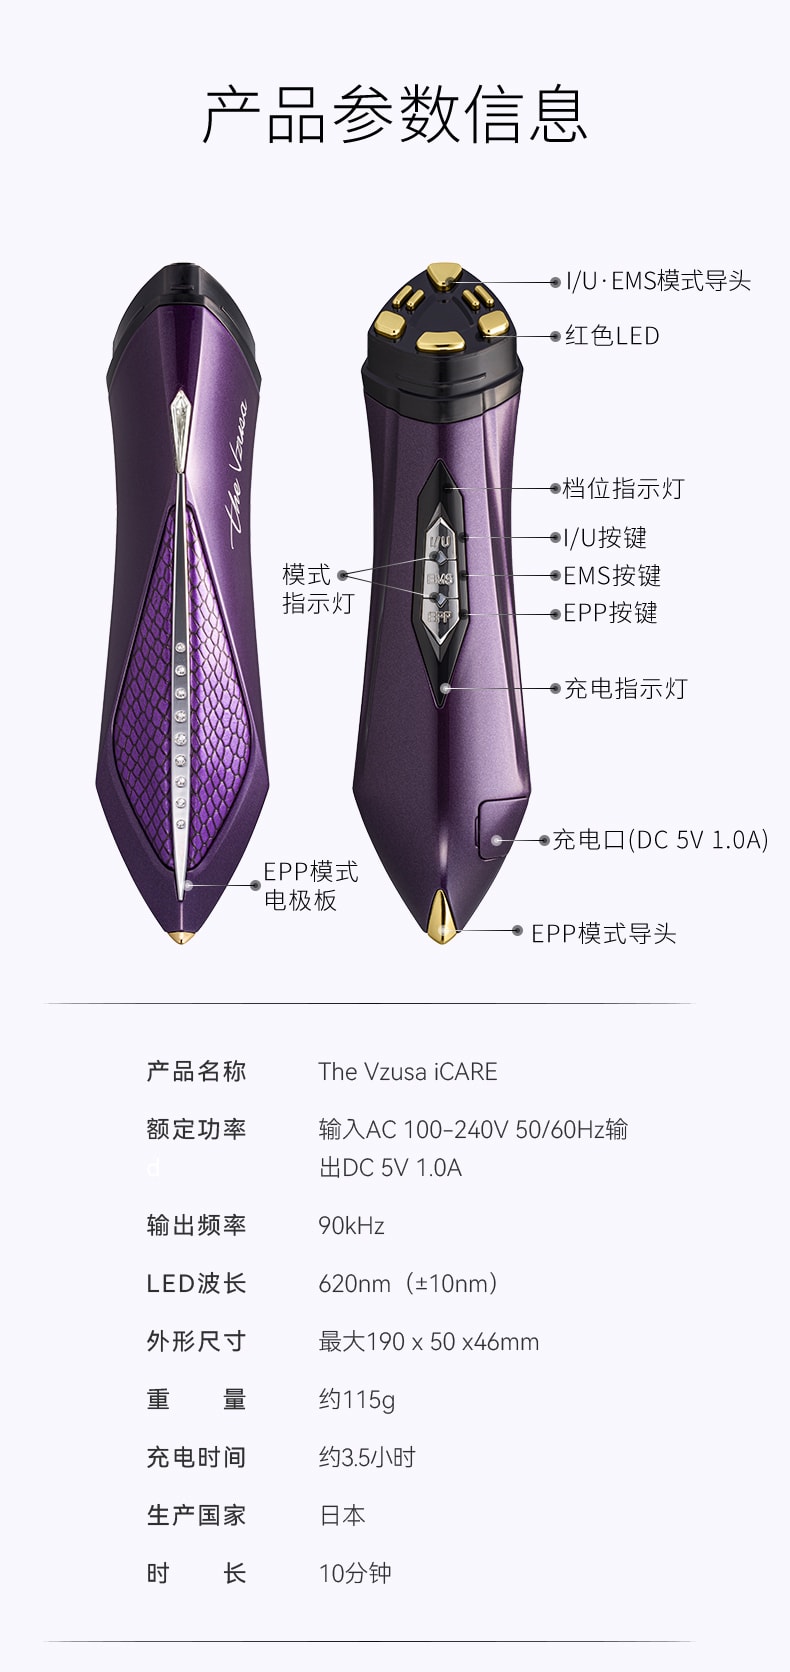 【贵妇美容仪】中国直邮The Vzusa iCARE美杜莎icare美容仪器 绛紫色